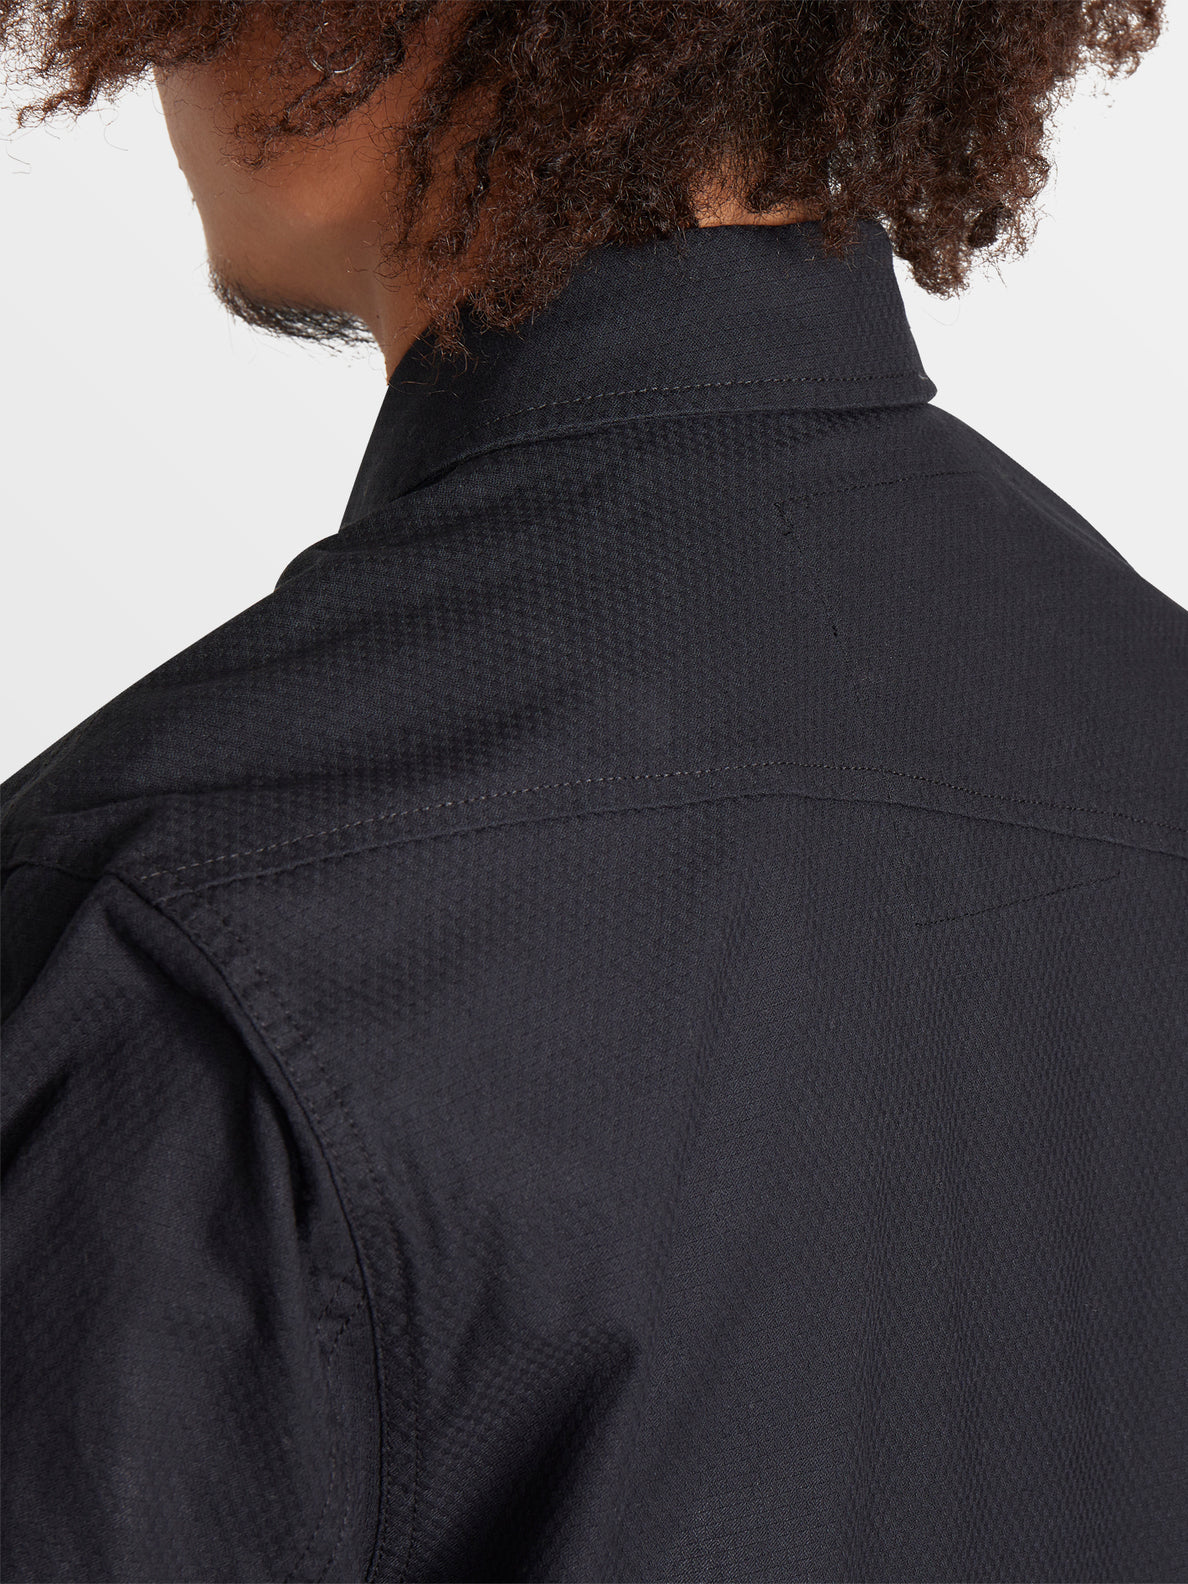 Tokyo True Shirt Jacket - Black (A0512204_BLK) [4]